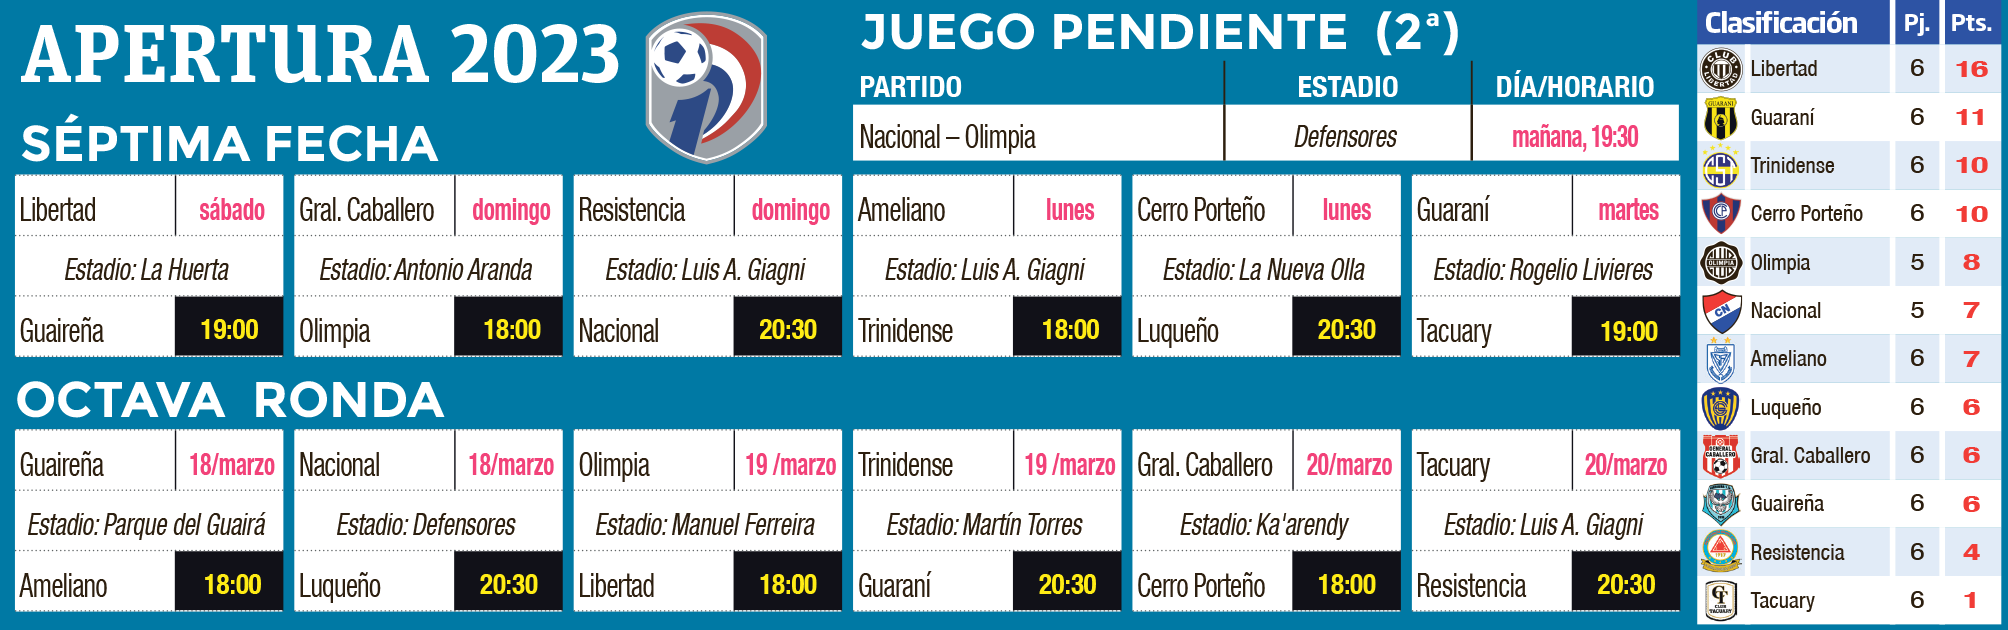 Programa de las fechas 7 y 8 y clasificación del torneo Apertura